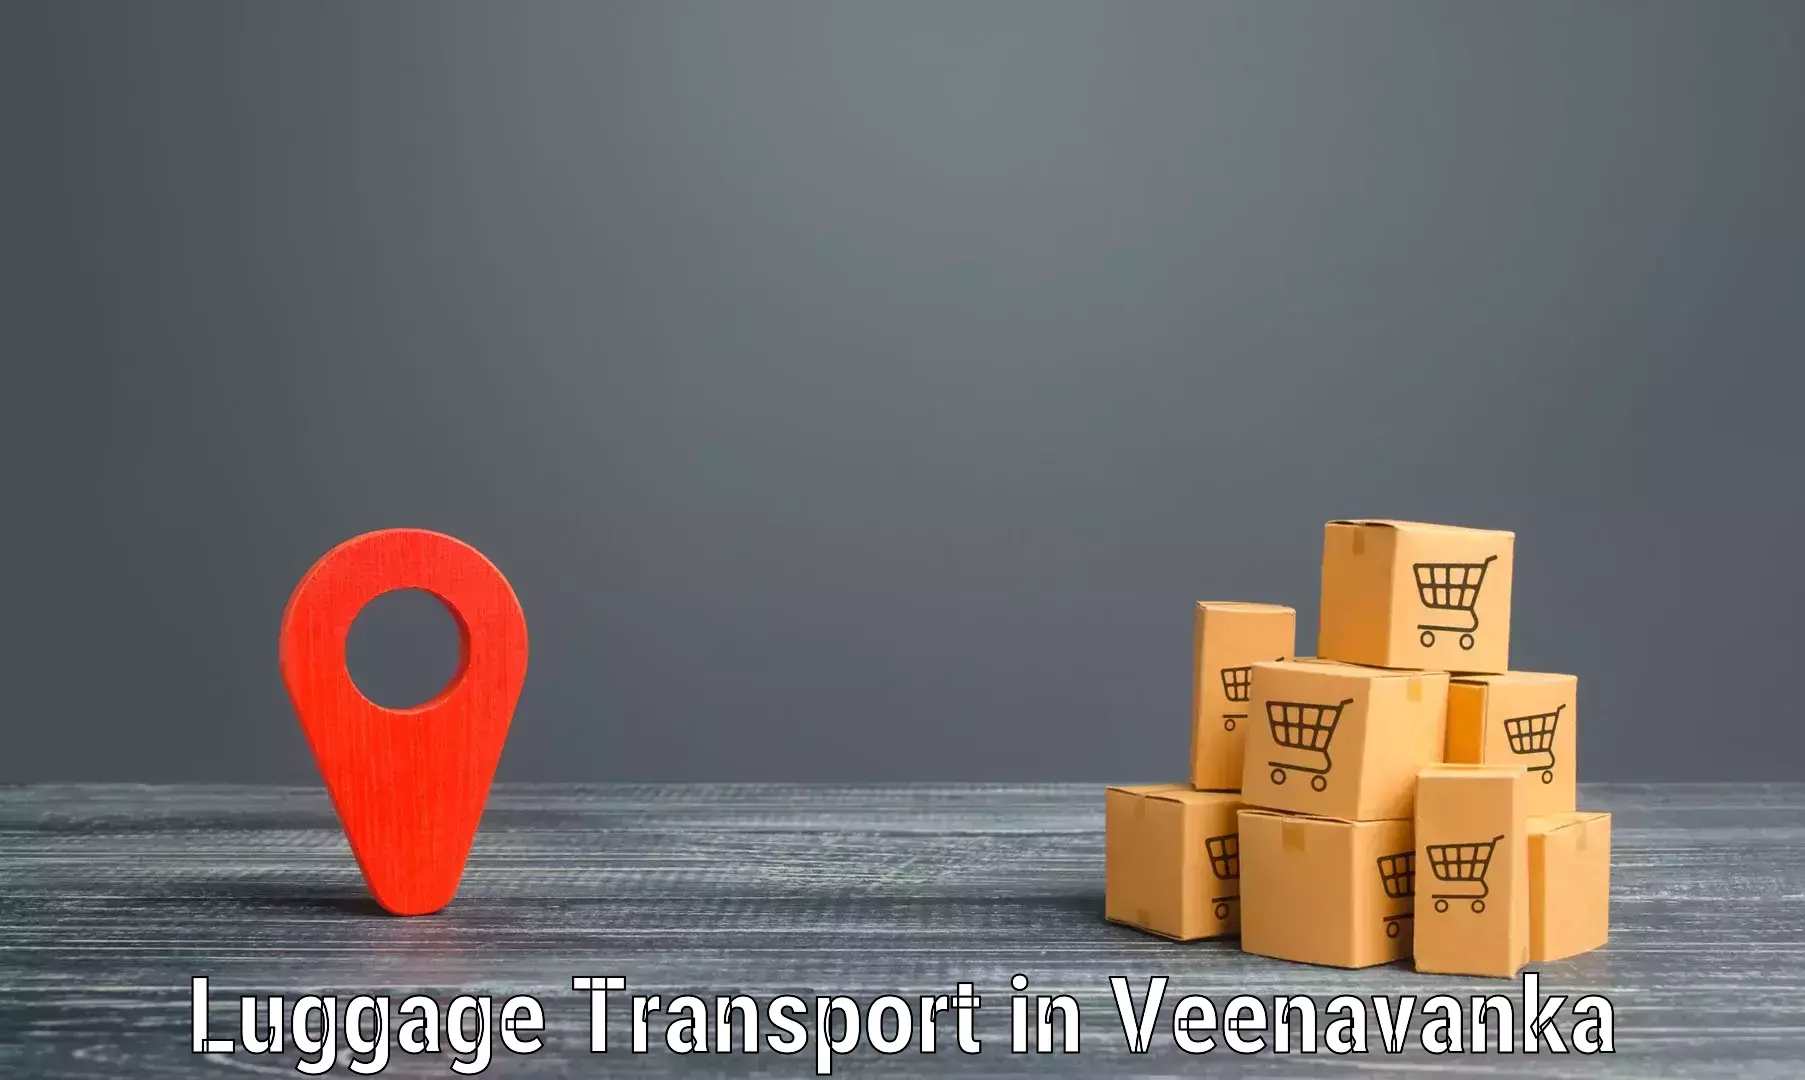 Baggage transport professionals in Veenavanka